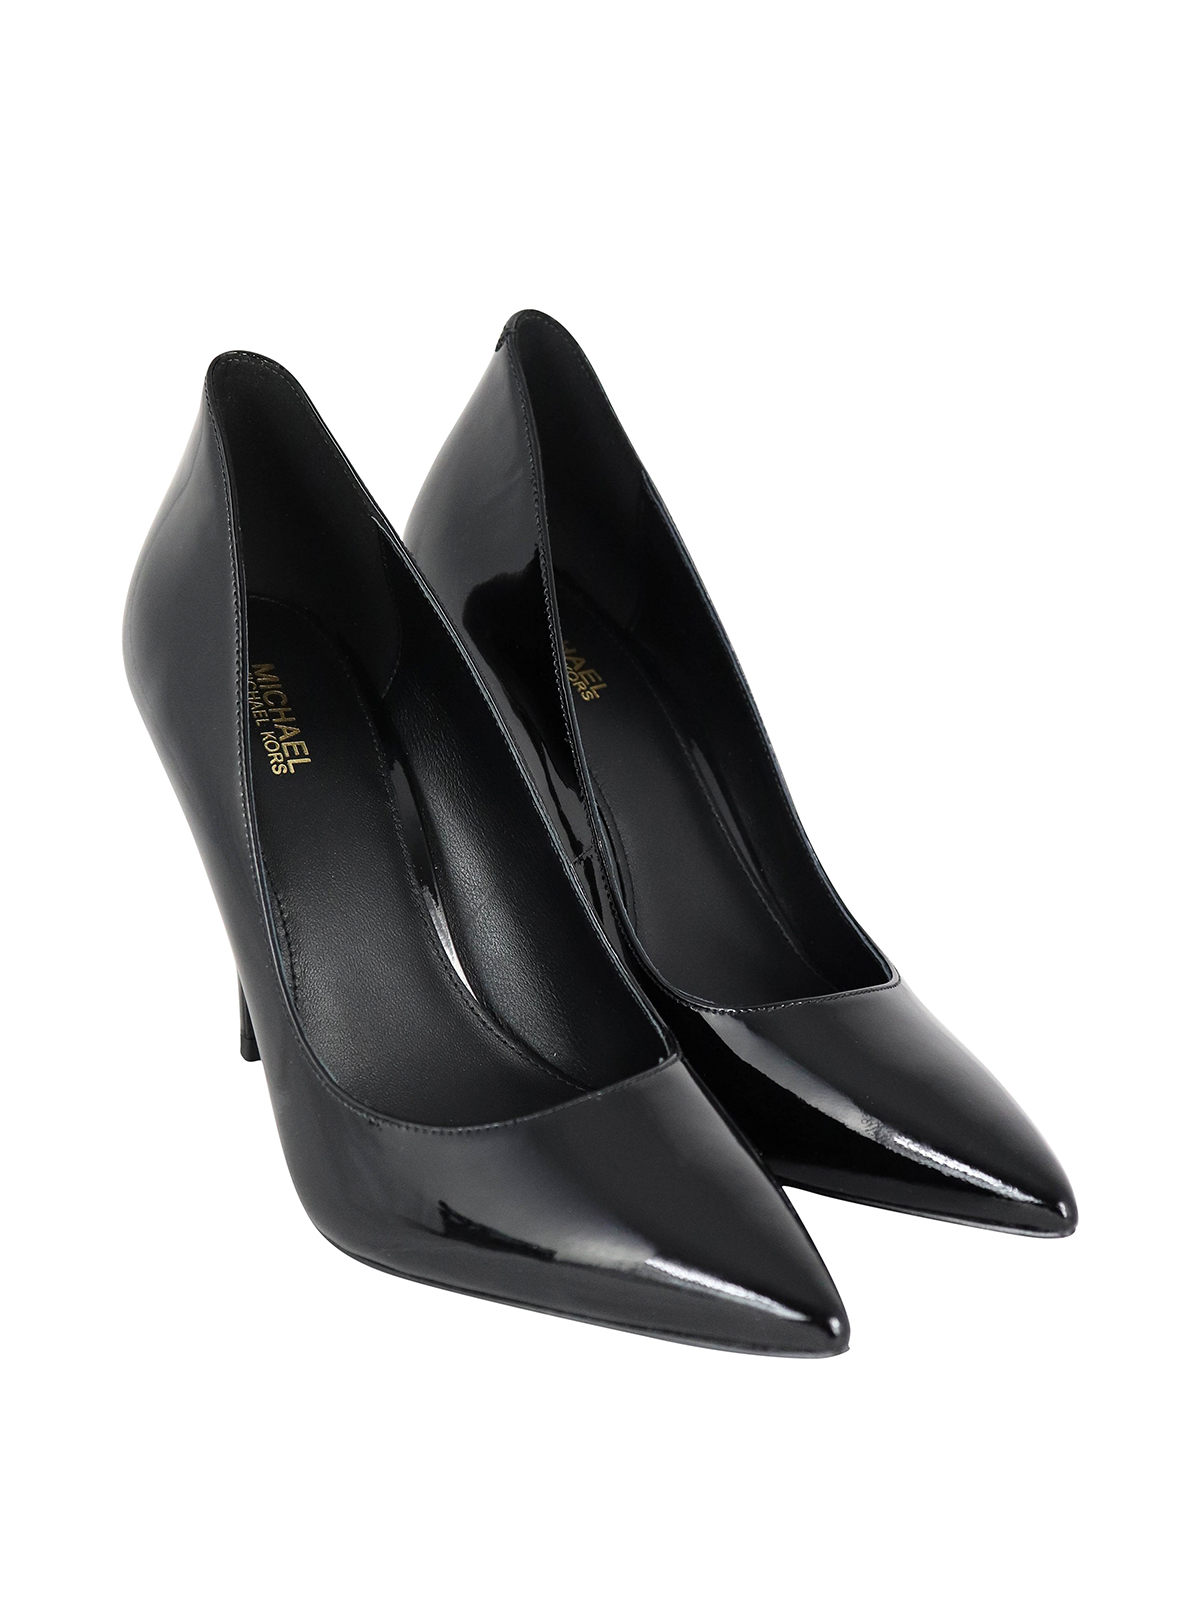 Court shoes Michael Kors - Keke black patent leather pumps - 40F9KEHP1A001